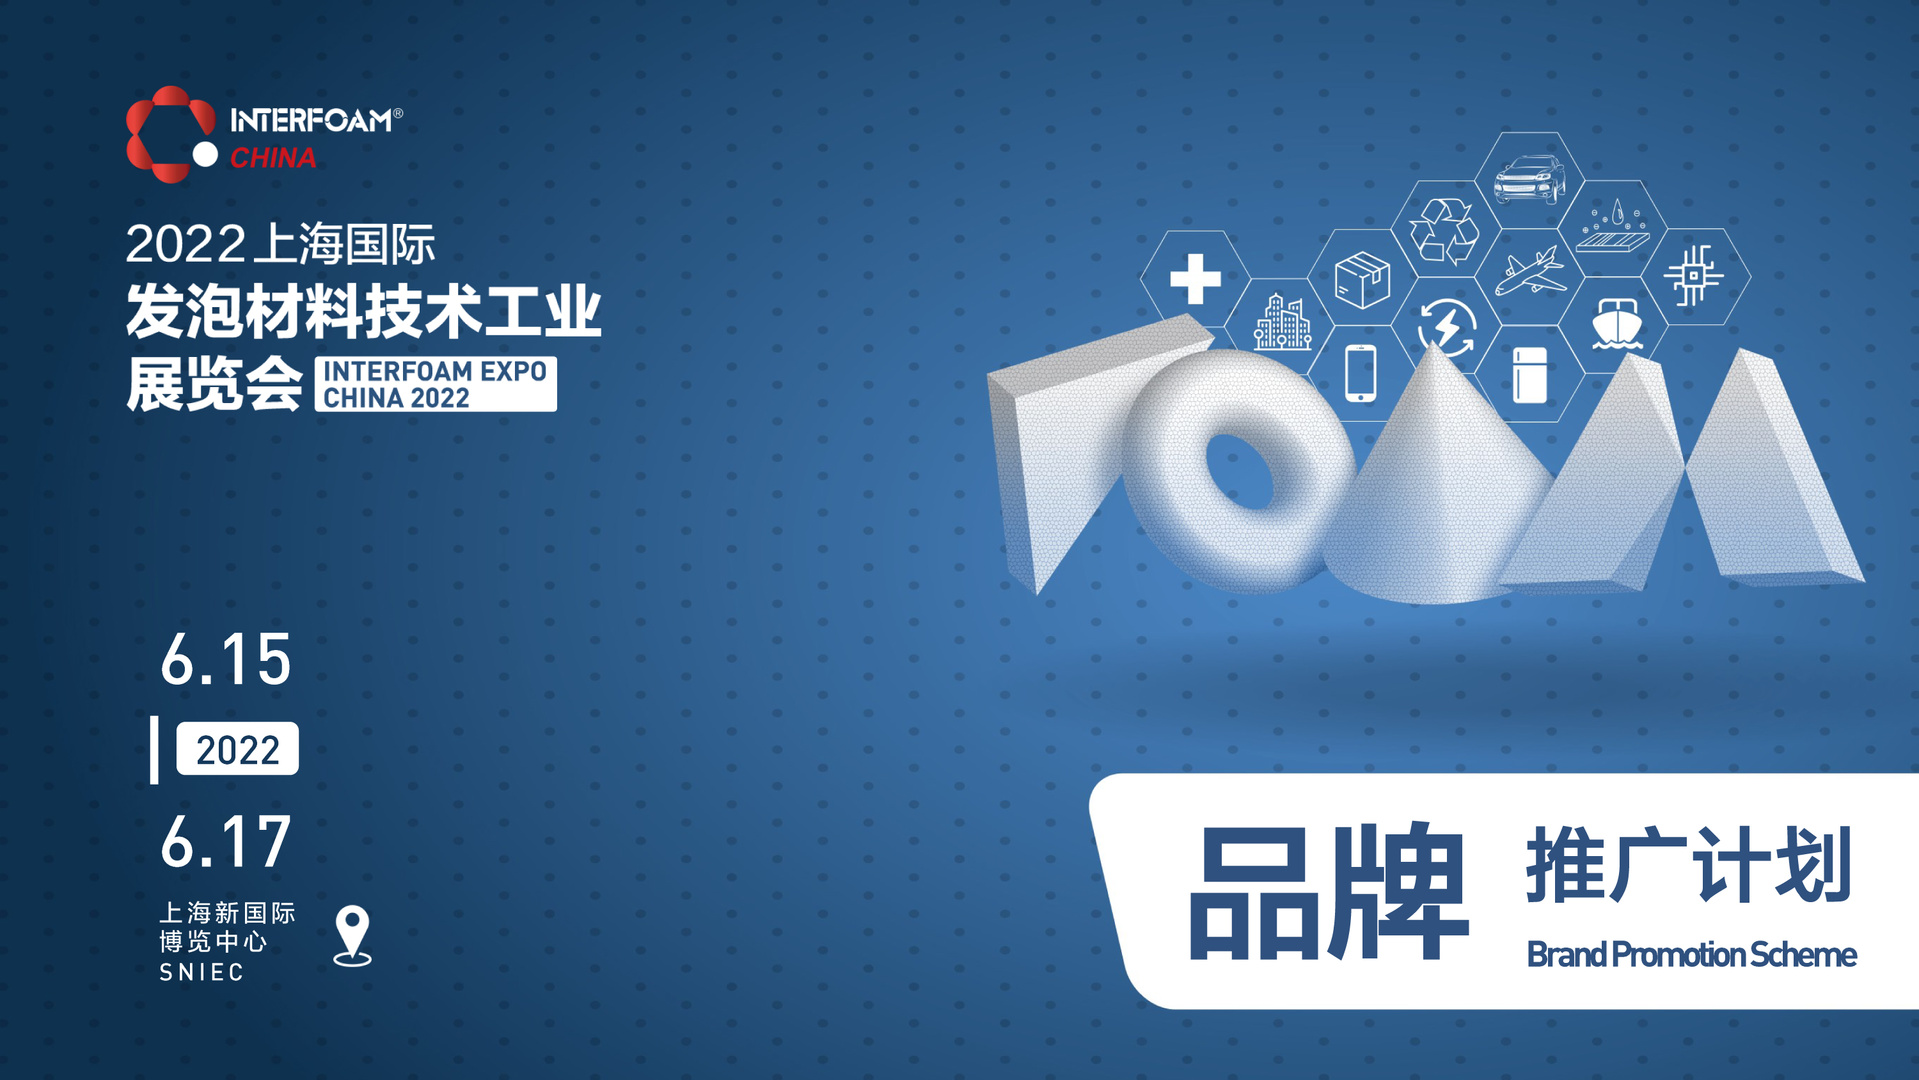 Interfoam2022品牌推广计划-上海展